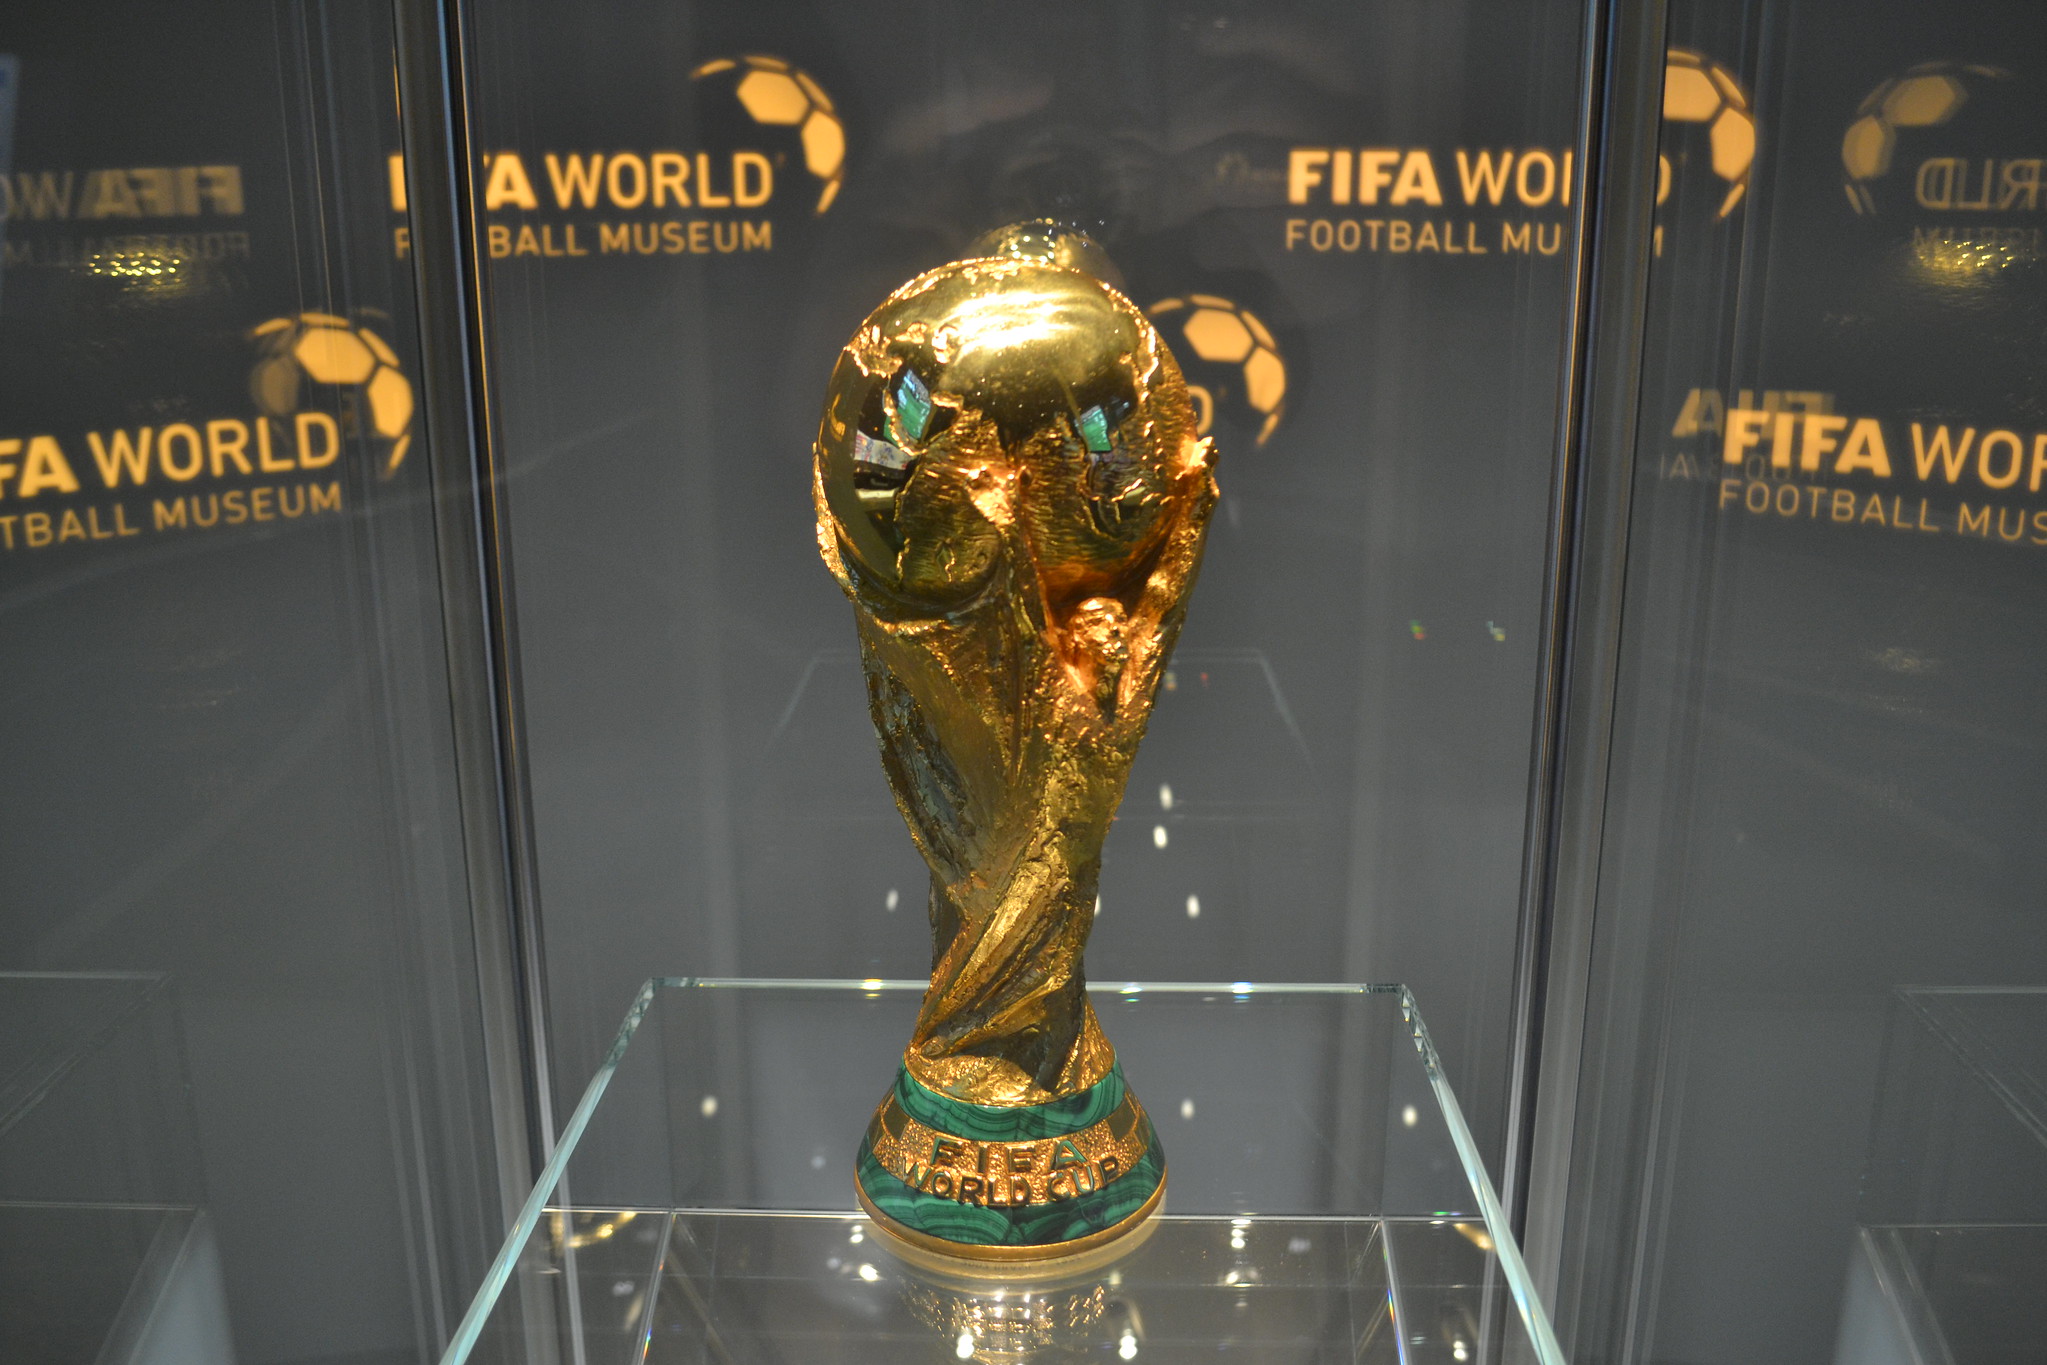 A Copa do Mundo FIFA 2018 em números – Money Times